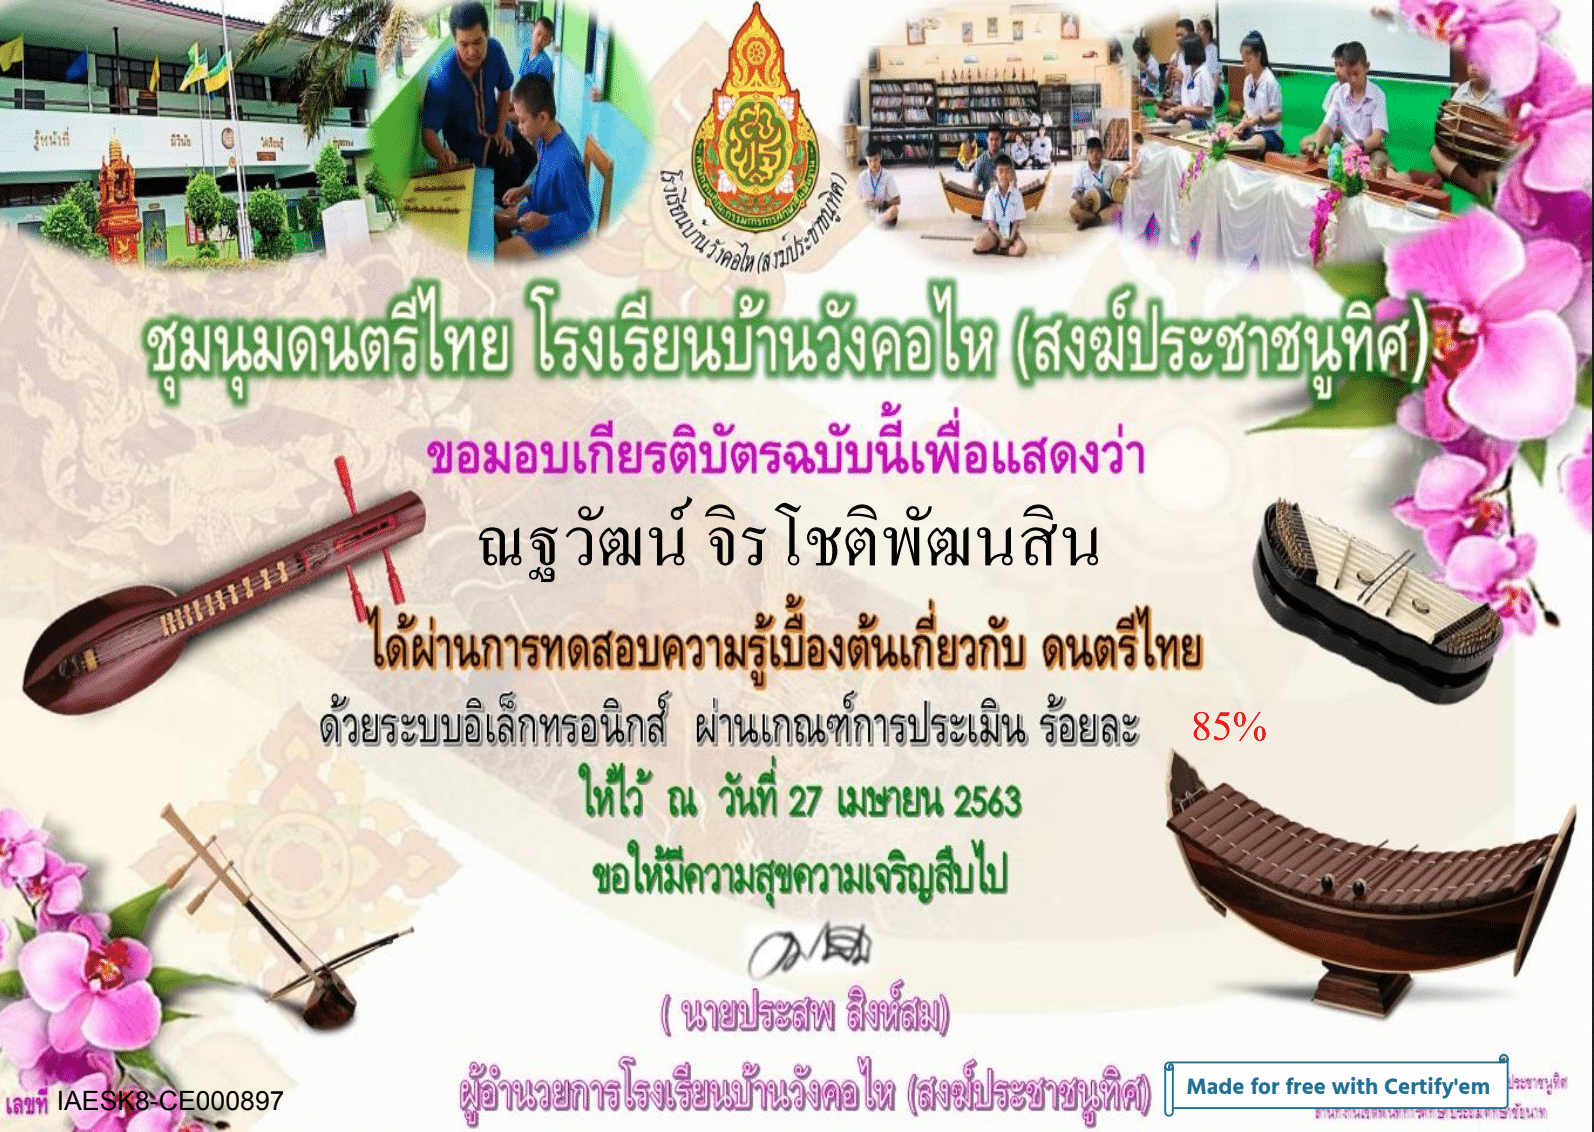 ขอเชิญทำแบบทดสอบ ความรู้พื้นฐานเกี่ยวกับดนตรีไทย ผ่านเกณฑ์ รับเกียรติบัตรออนไลน์ โดยชุมนุมดนตรีไทยโรงเรียนบ้านวังคอไหฯ สพป.ชัยนาท